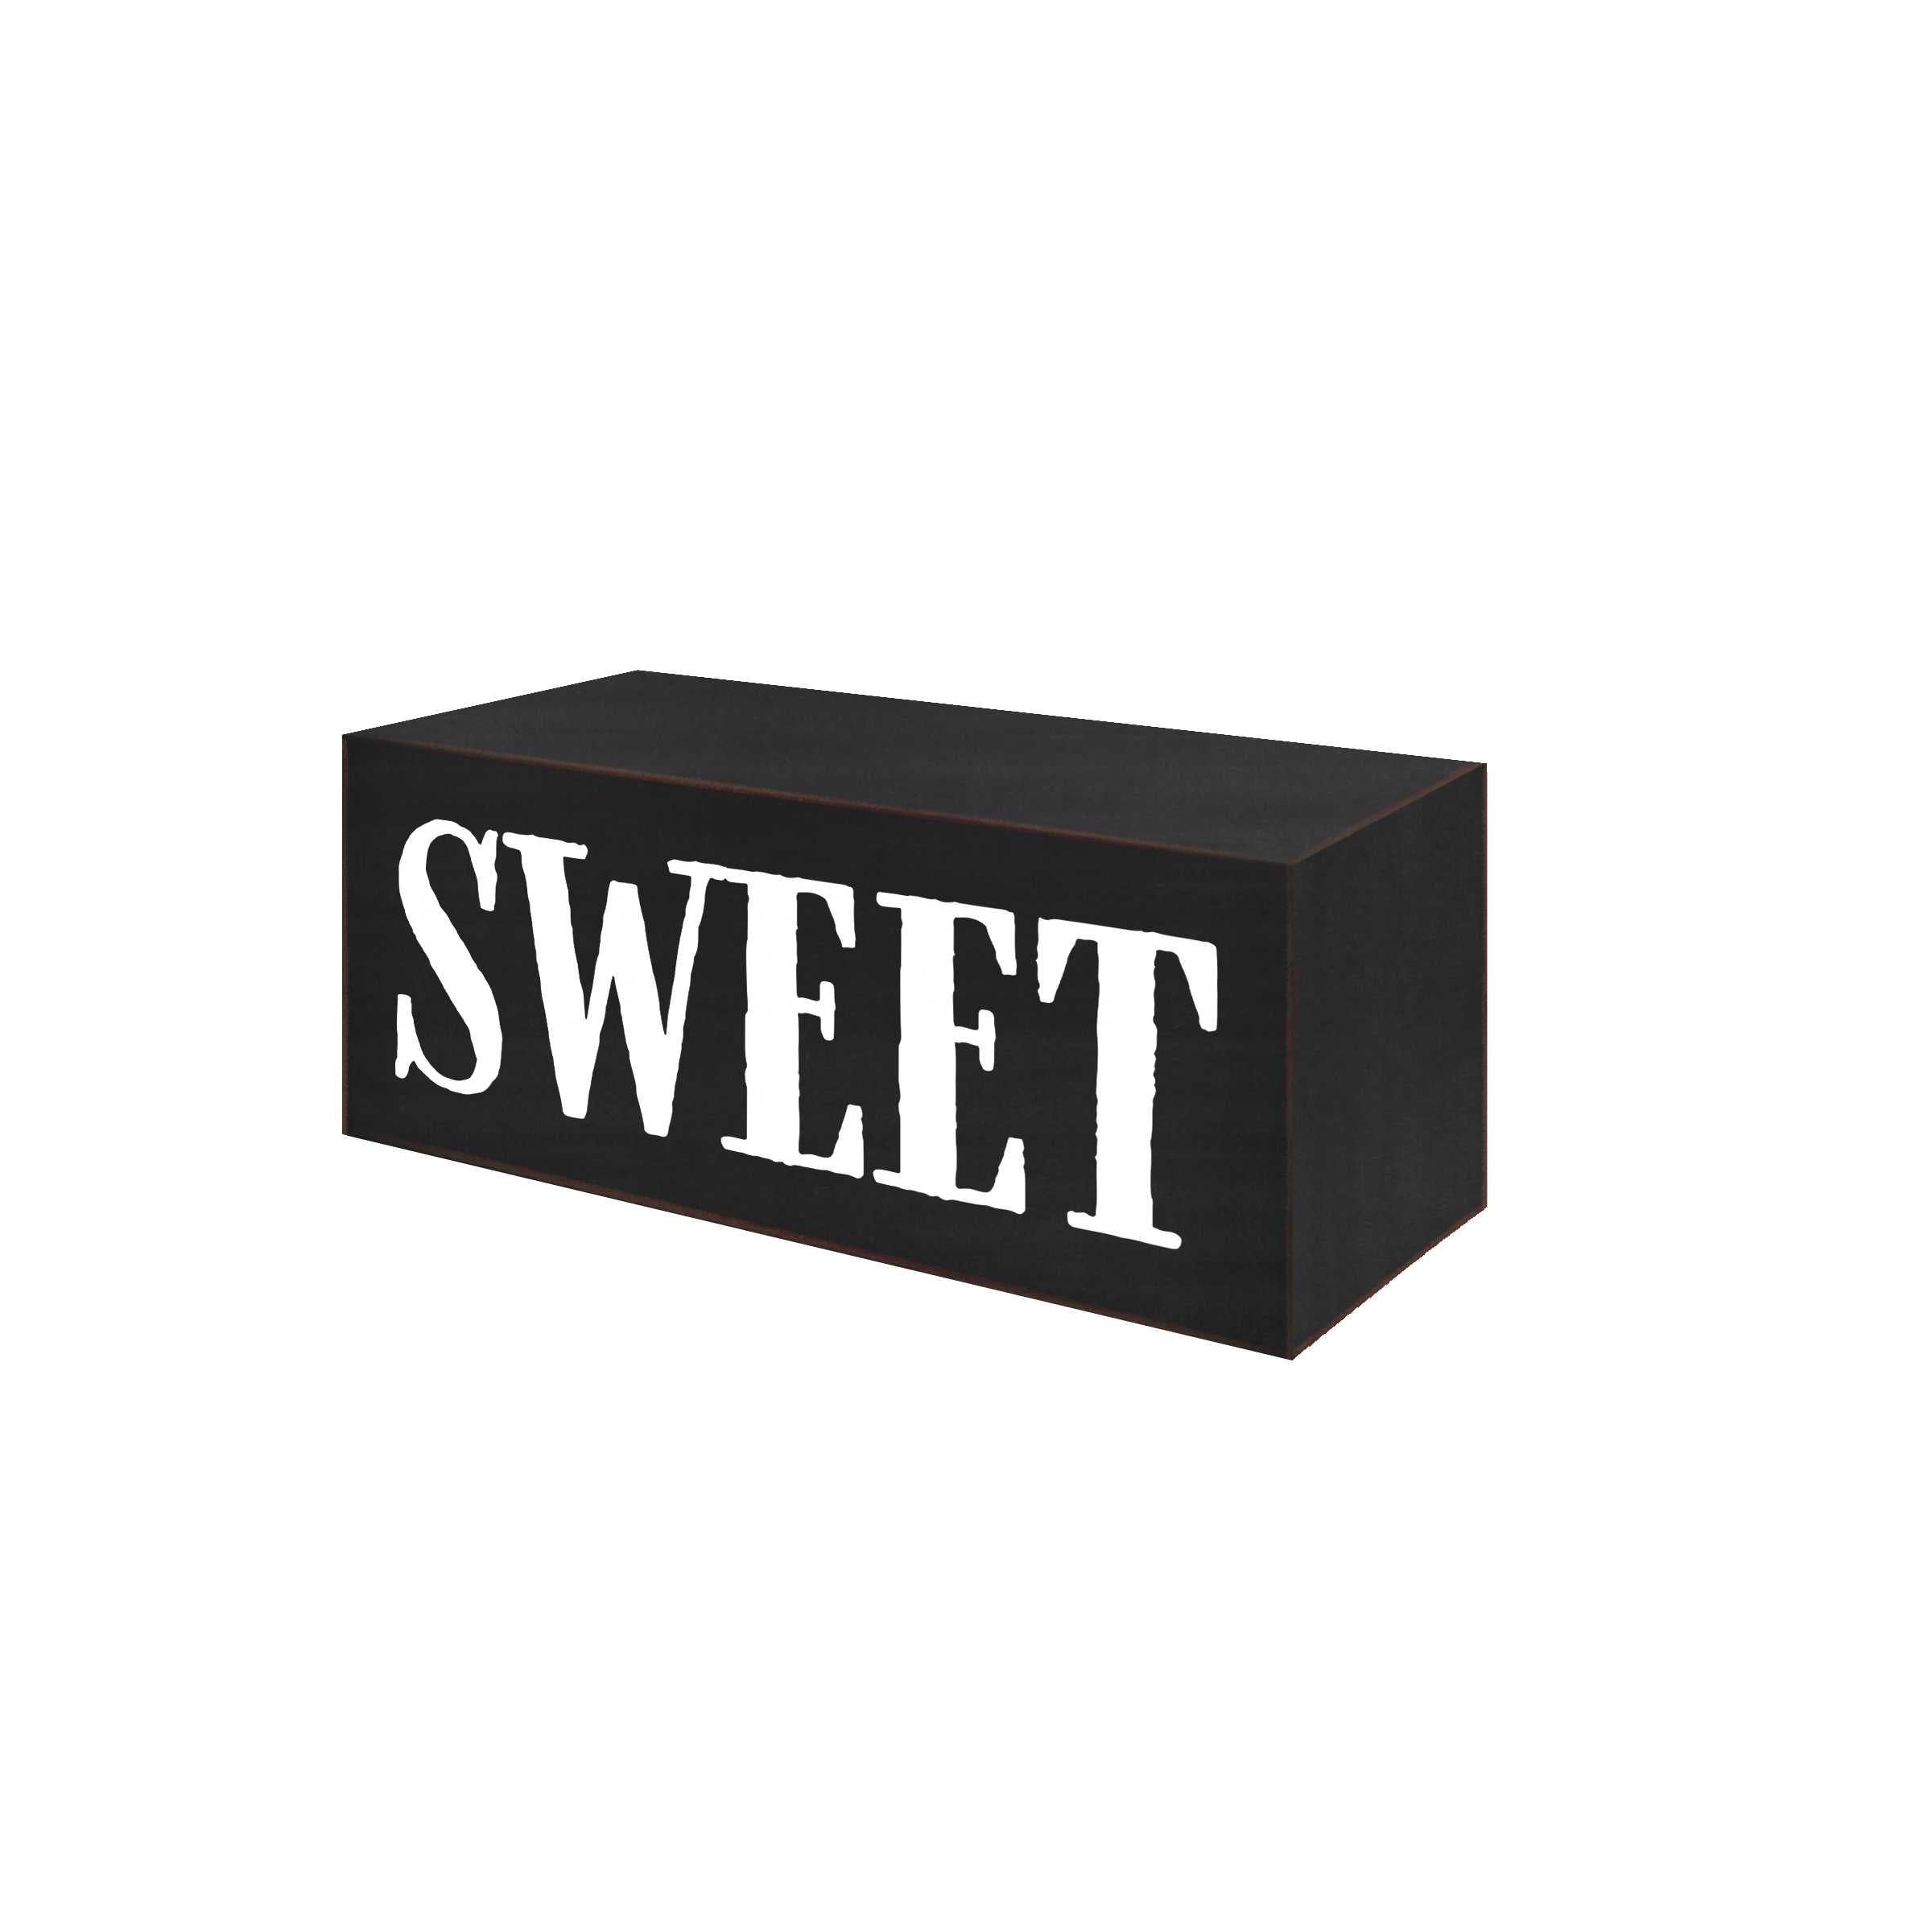 Sweet Word Block